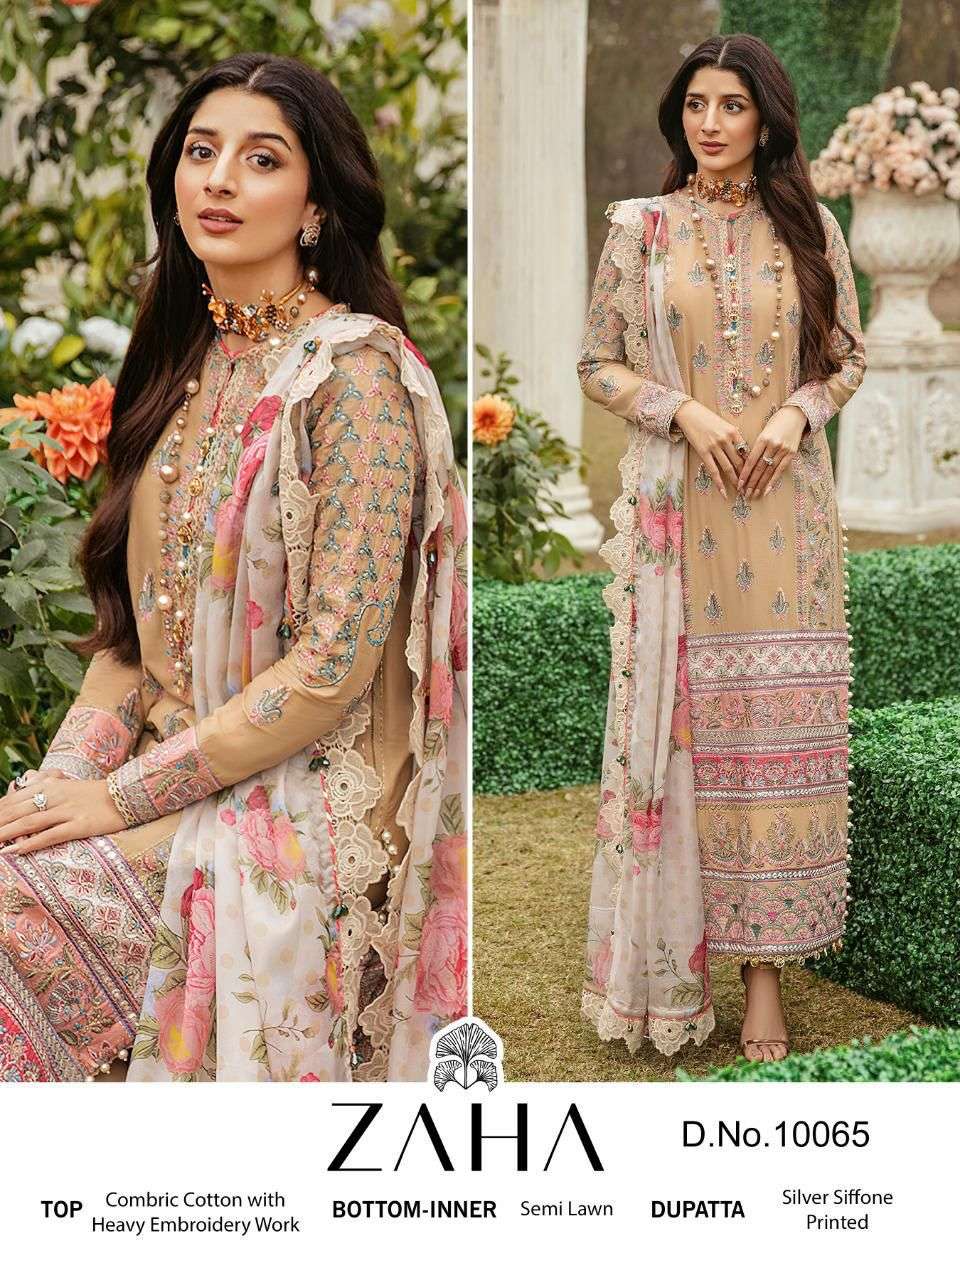 zaha 10065 design cotton pakstani suit at singel wholesale price 